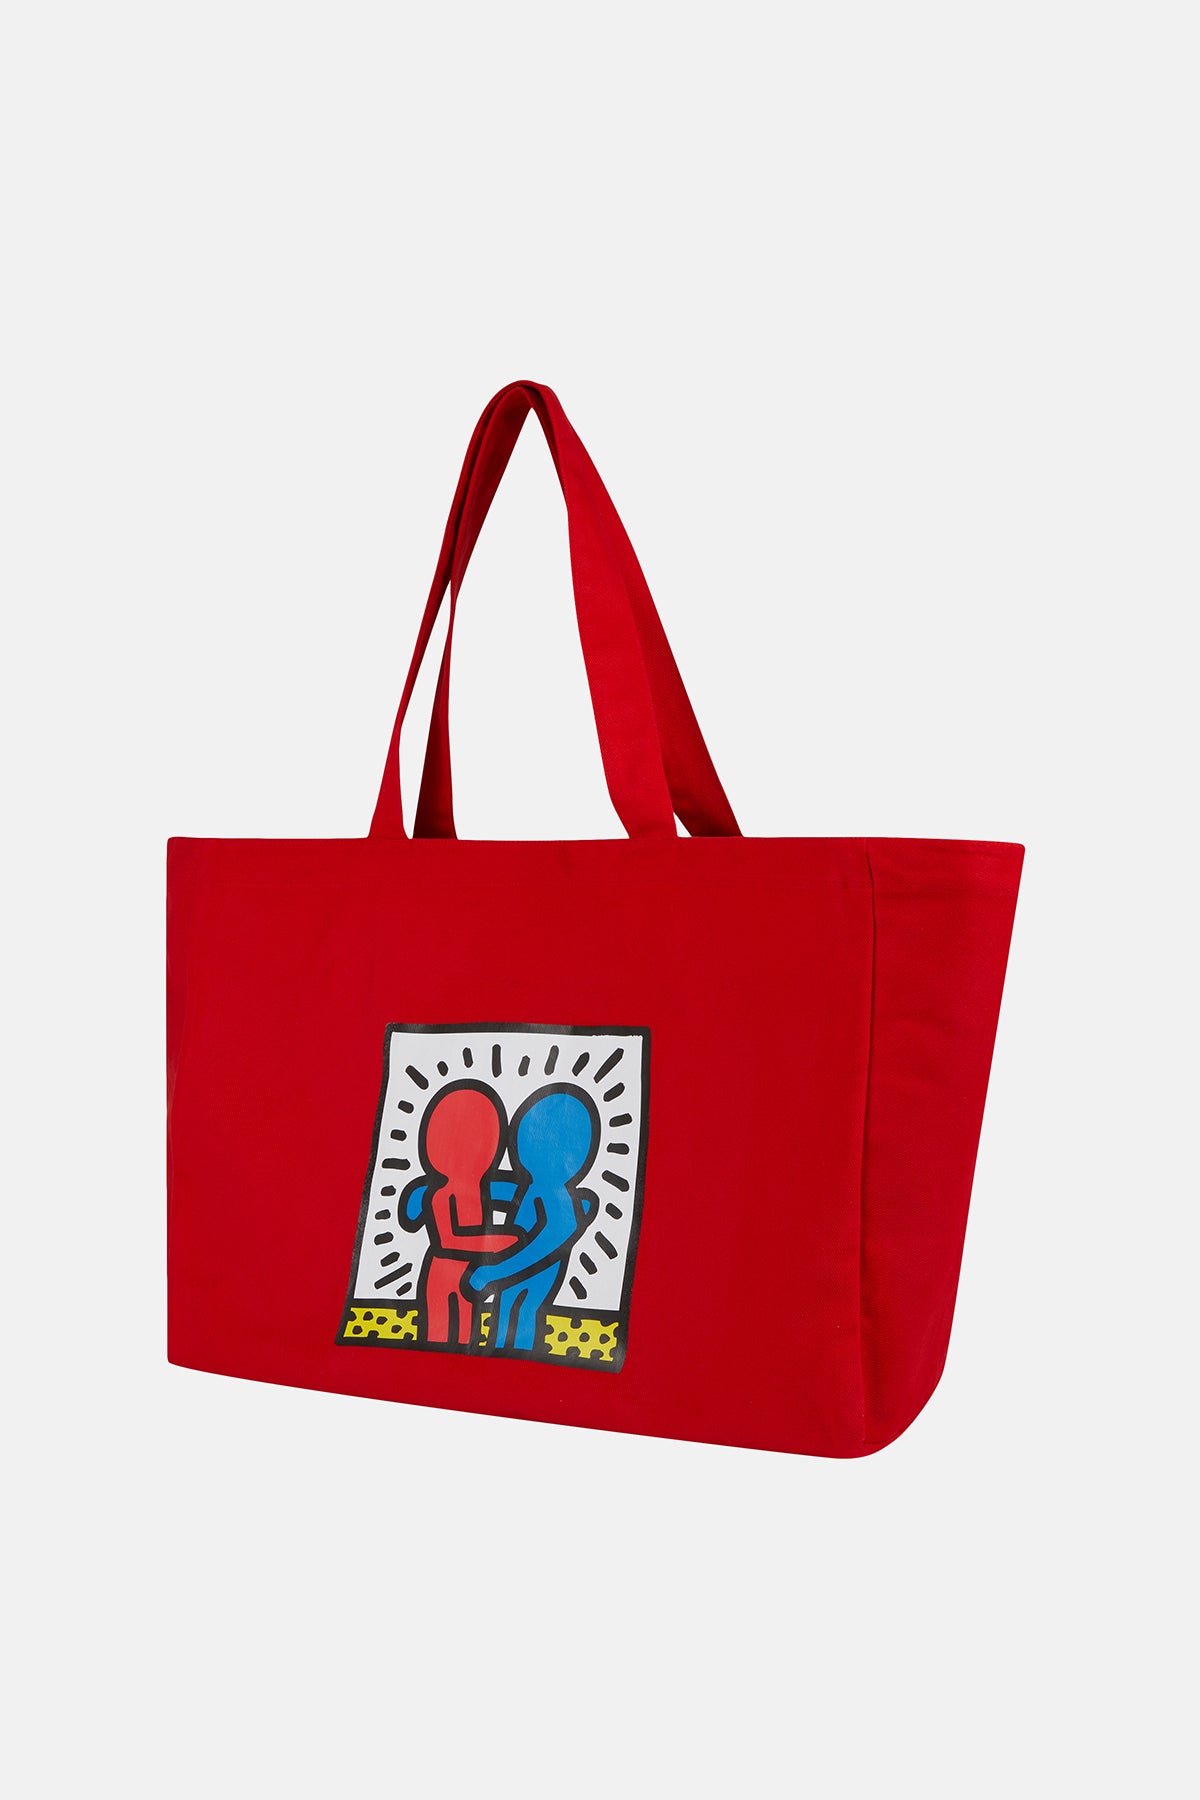 Keith Haring Hug Maxi Allday Çanta - Kırmızı